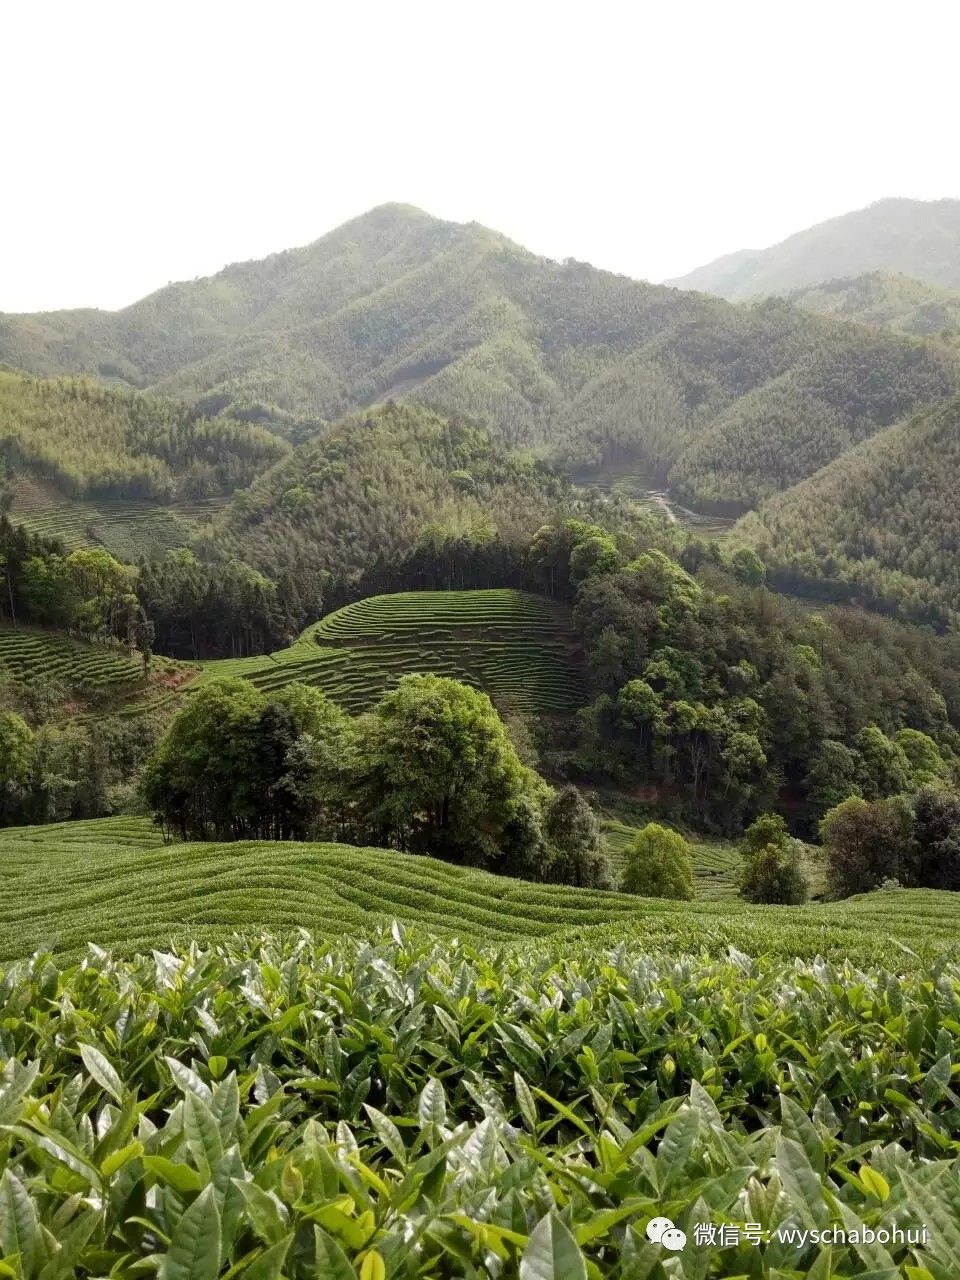 武夷高山生态茶有话说